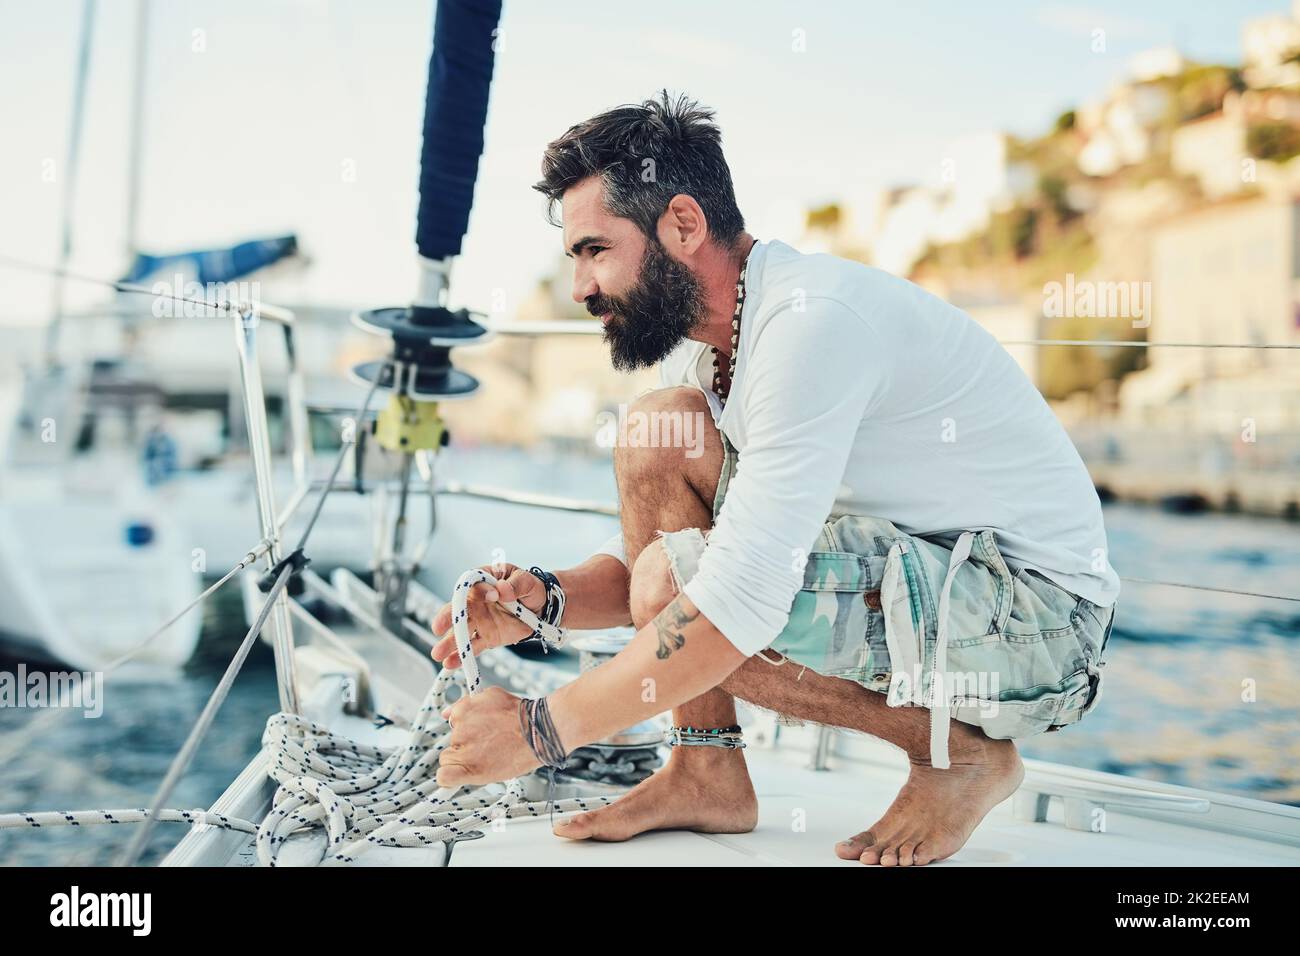 Qui è dove youll trovarmi nel mio tempo libero. Scatto di un uomo maturo in barca a vela in una mattinata di sole. Foto Stock